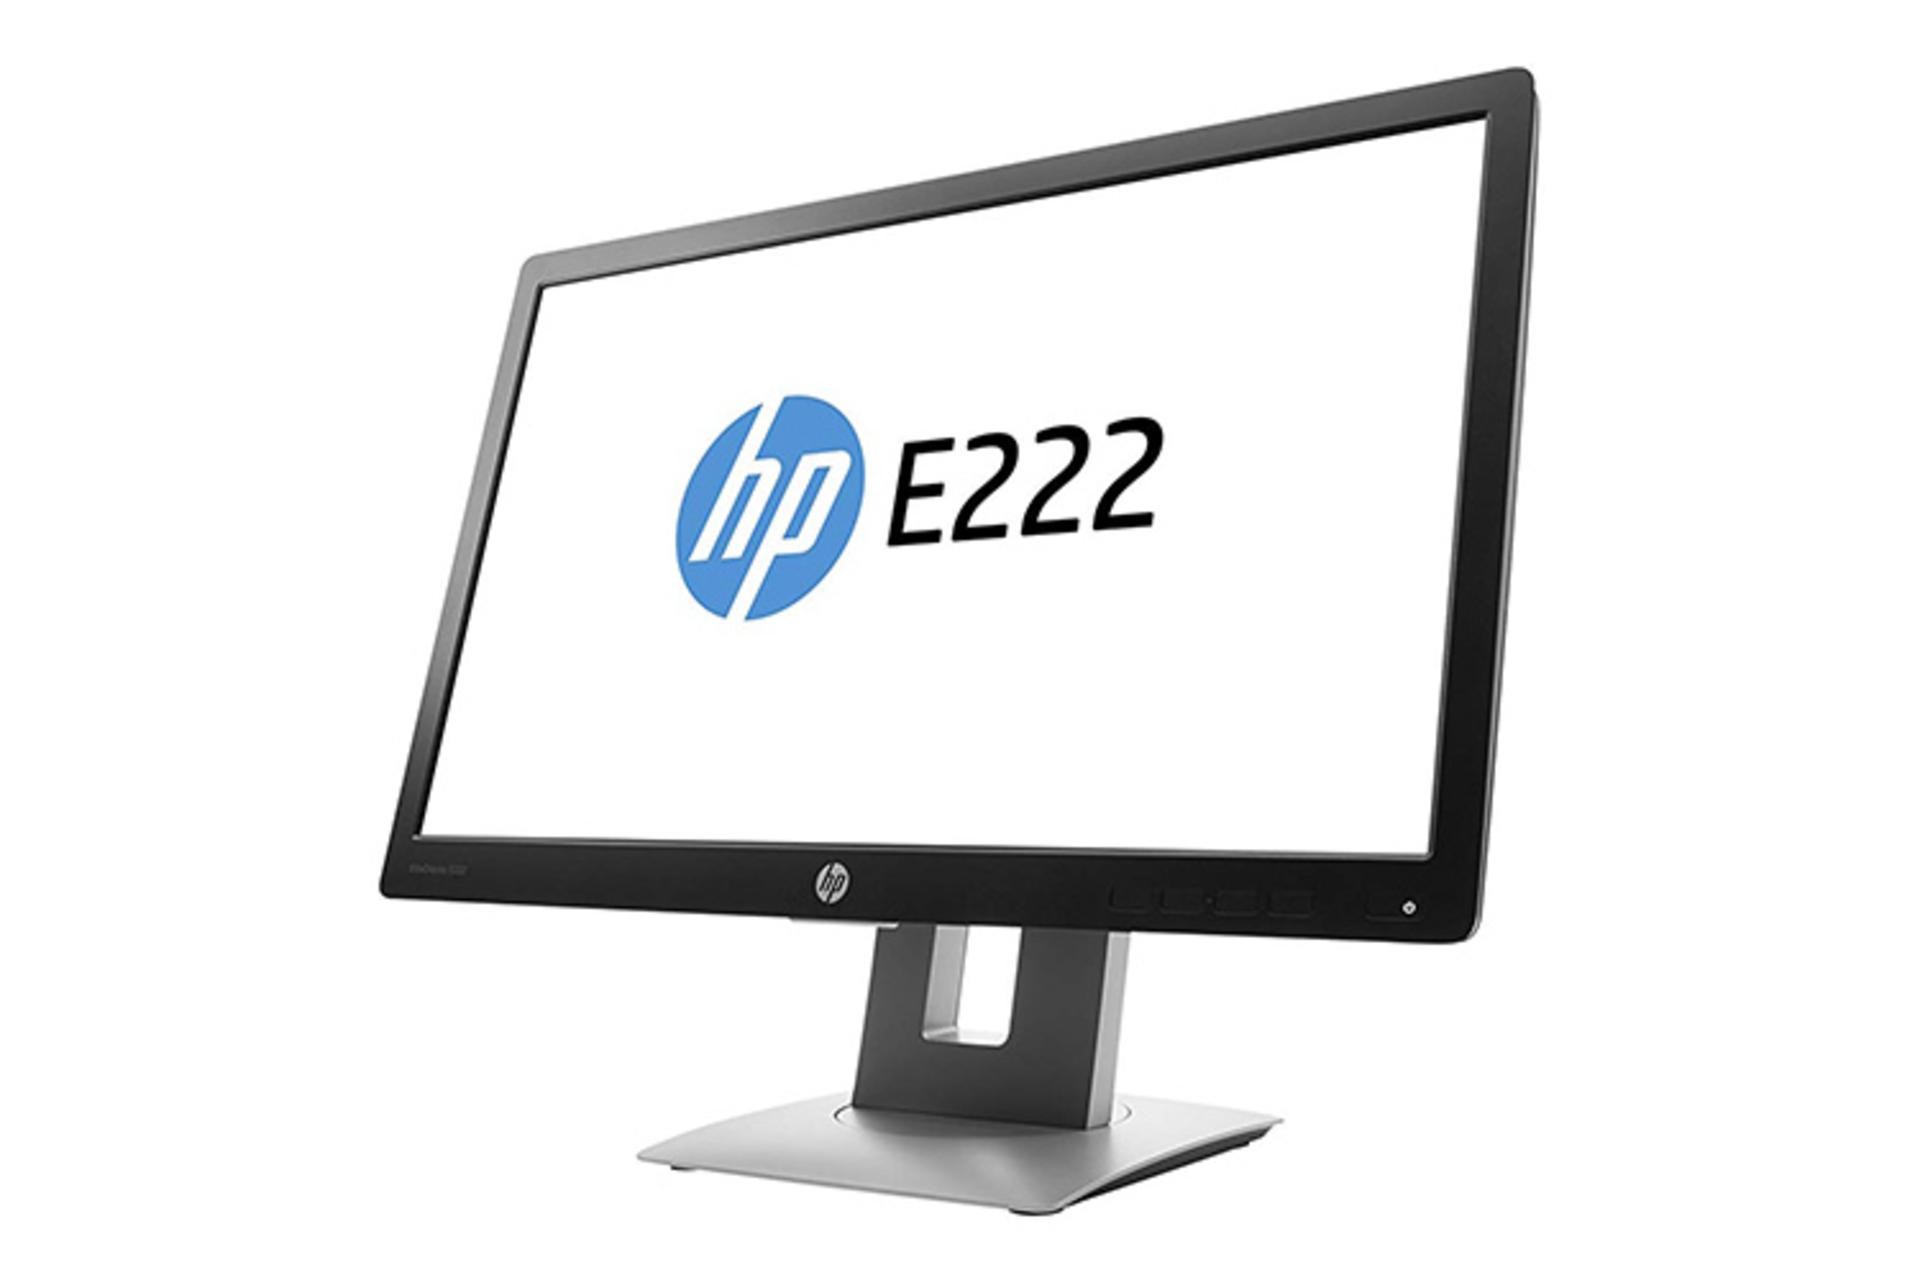 مرجع متخصصين ايران HP E222